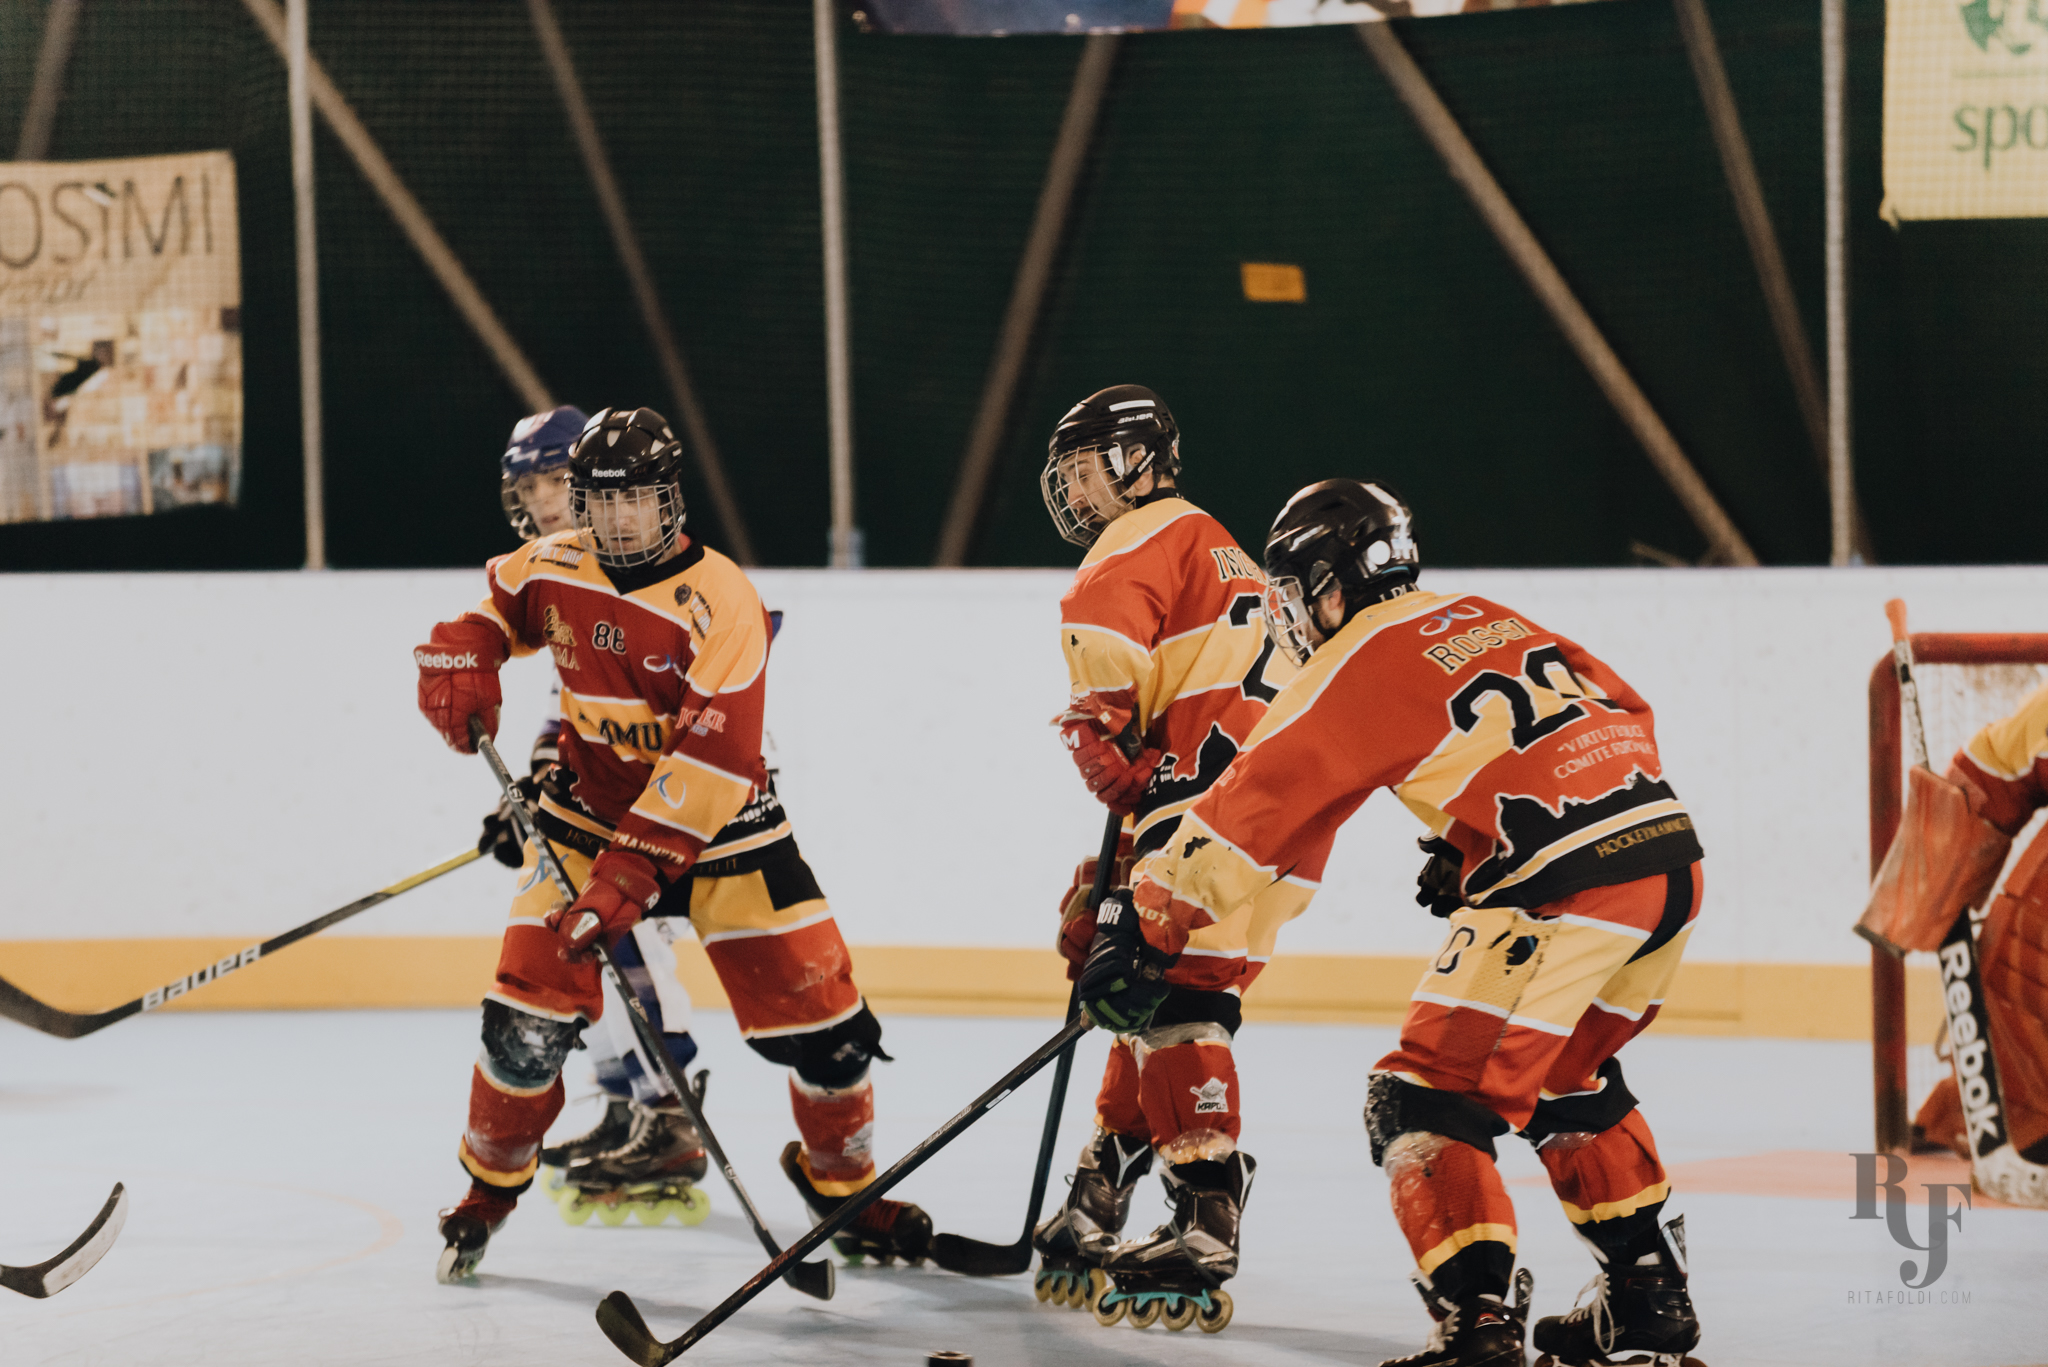 Hockey Mammuth, hockey e pattinaggio a roma, hockey giovanile, Mammuth Roma, Mammuth hockey roma, Cv Skating, sports photo, FISR, inline hockey, Rita Foldi photo